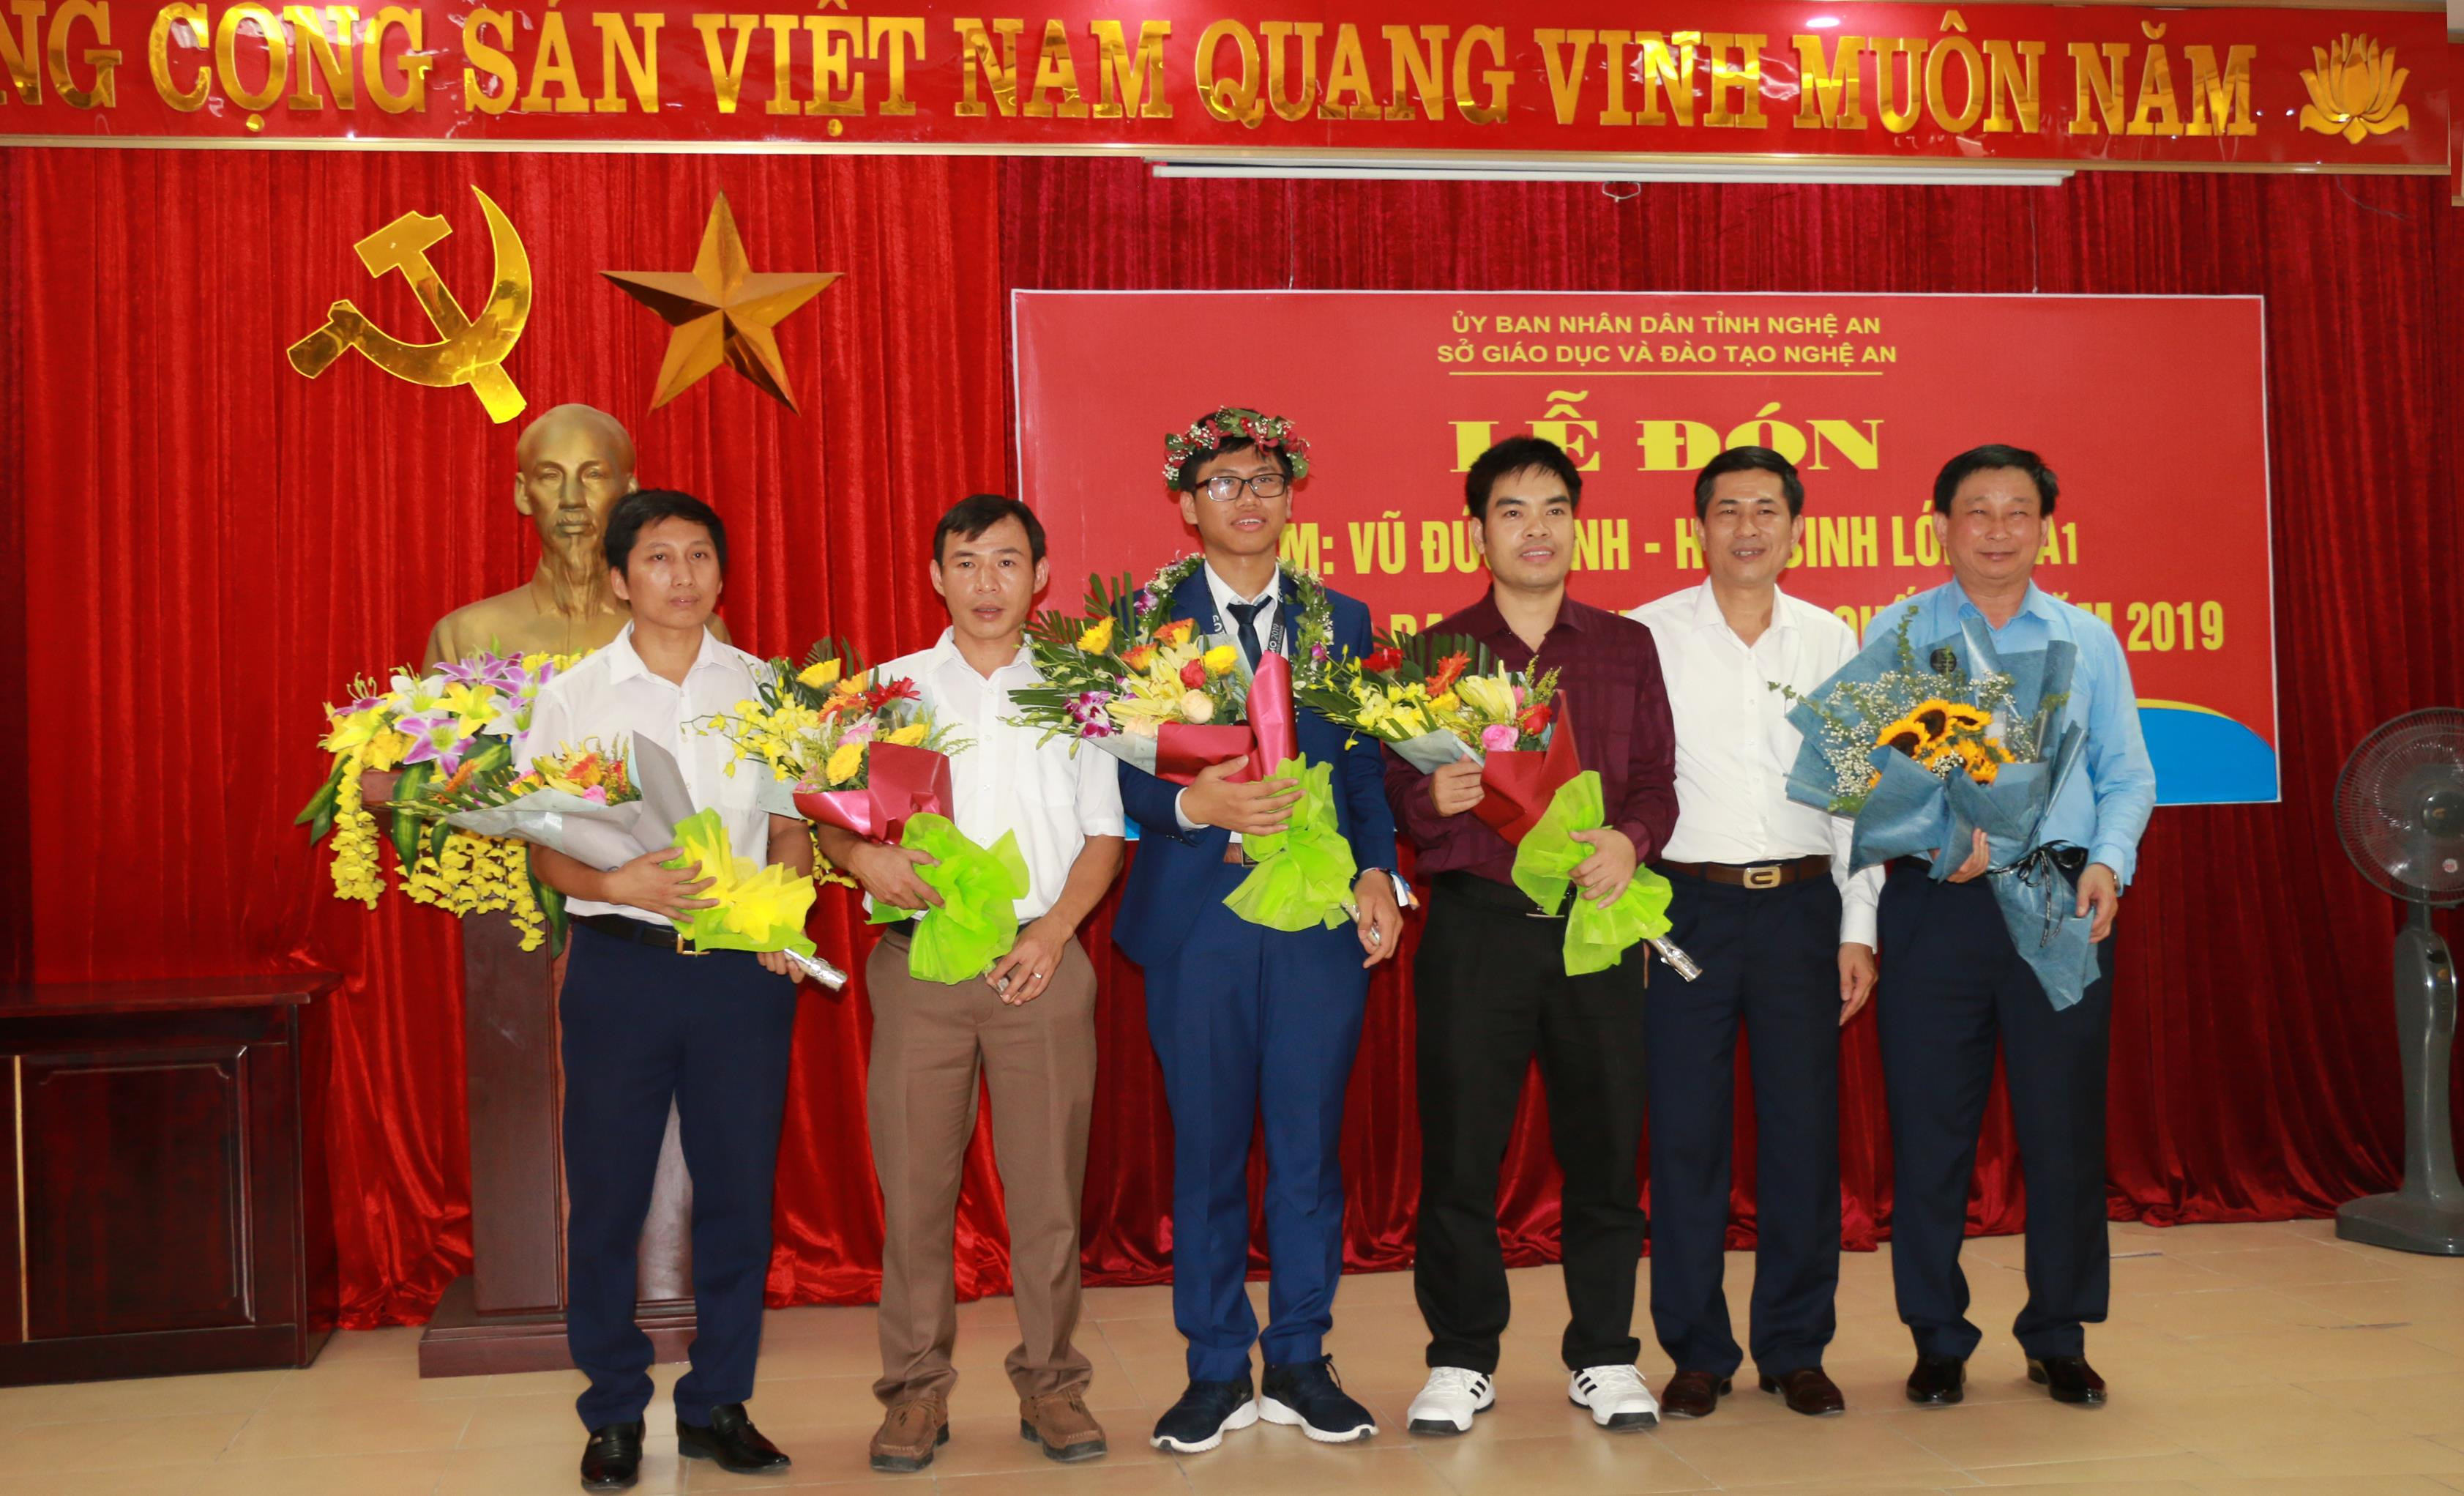 Giám đốc Sở Giáo dục và Đào tạo Thái Văn Thành tặng hoa cho em Vũ Đức Vinh và các thầy giáo trong tổ bồi dưỡng. Ảnh: Mỹ Hà